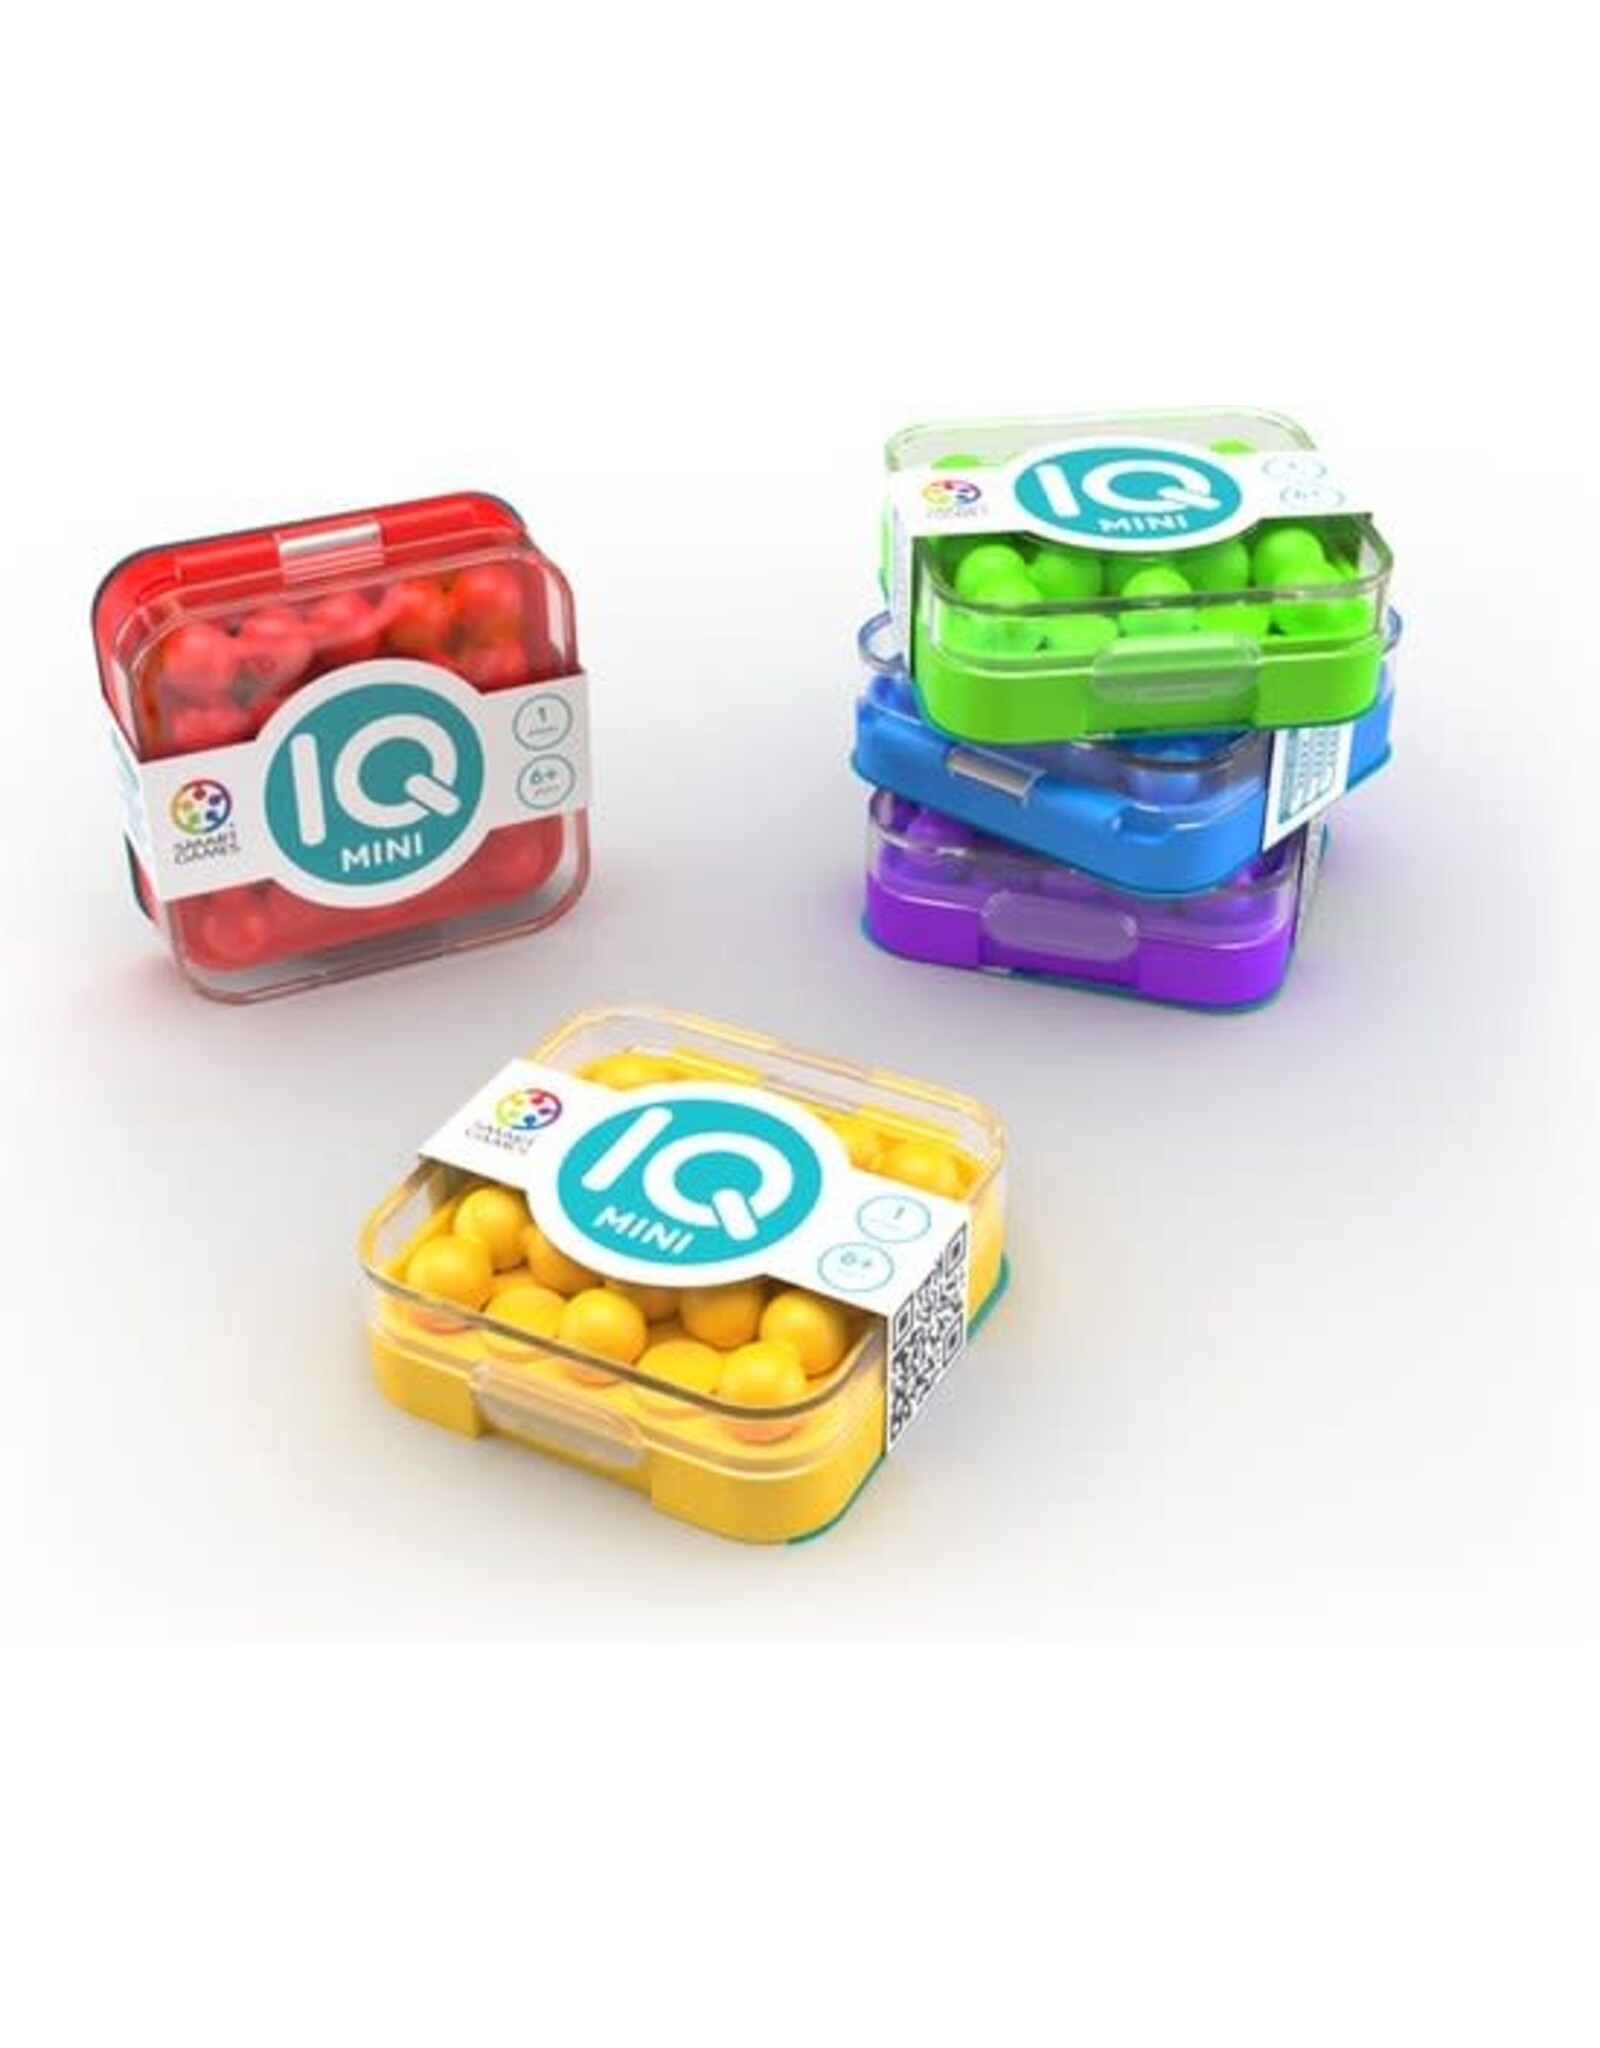 SmartGames Smart Games IQ Pocket Games - IQ Mini